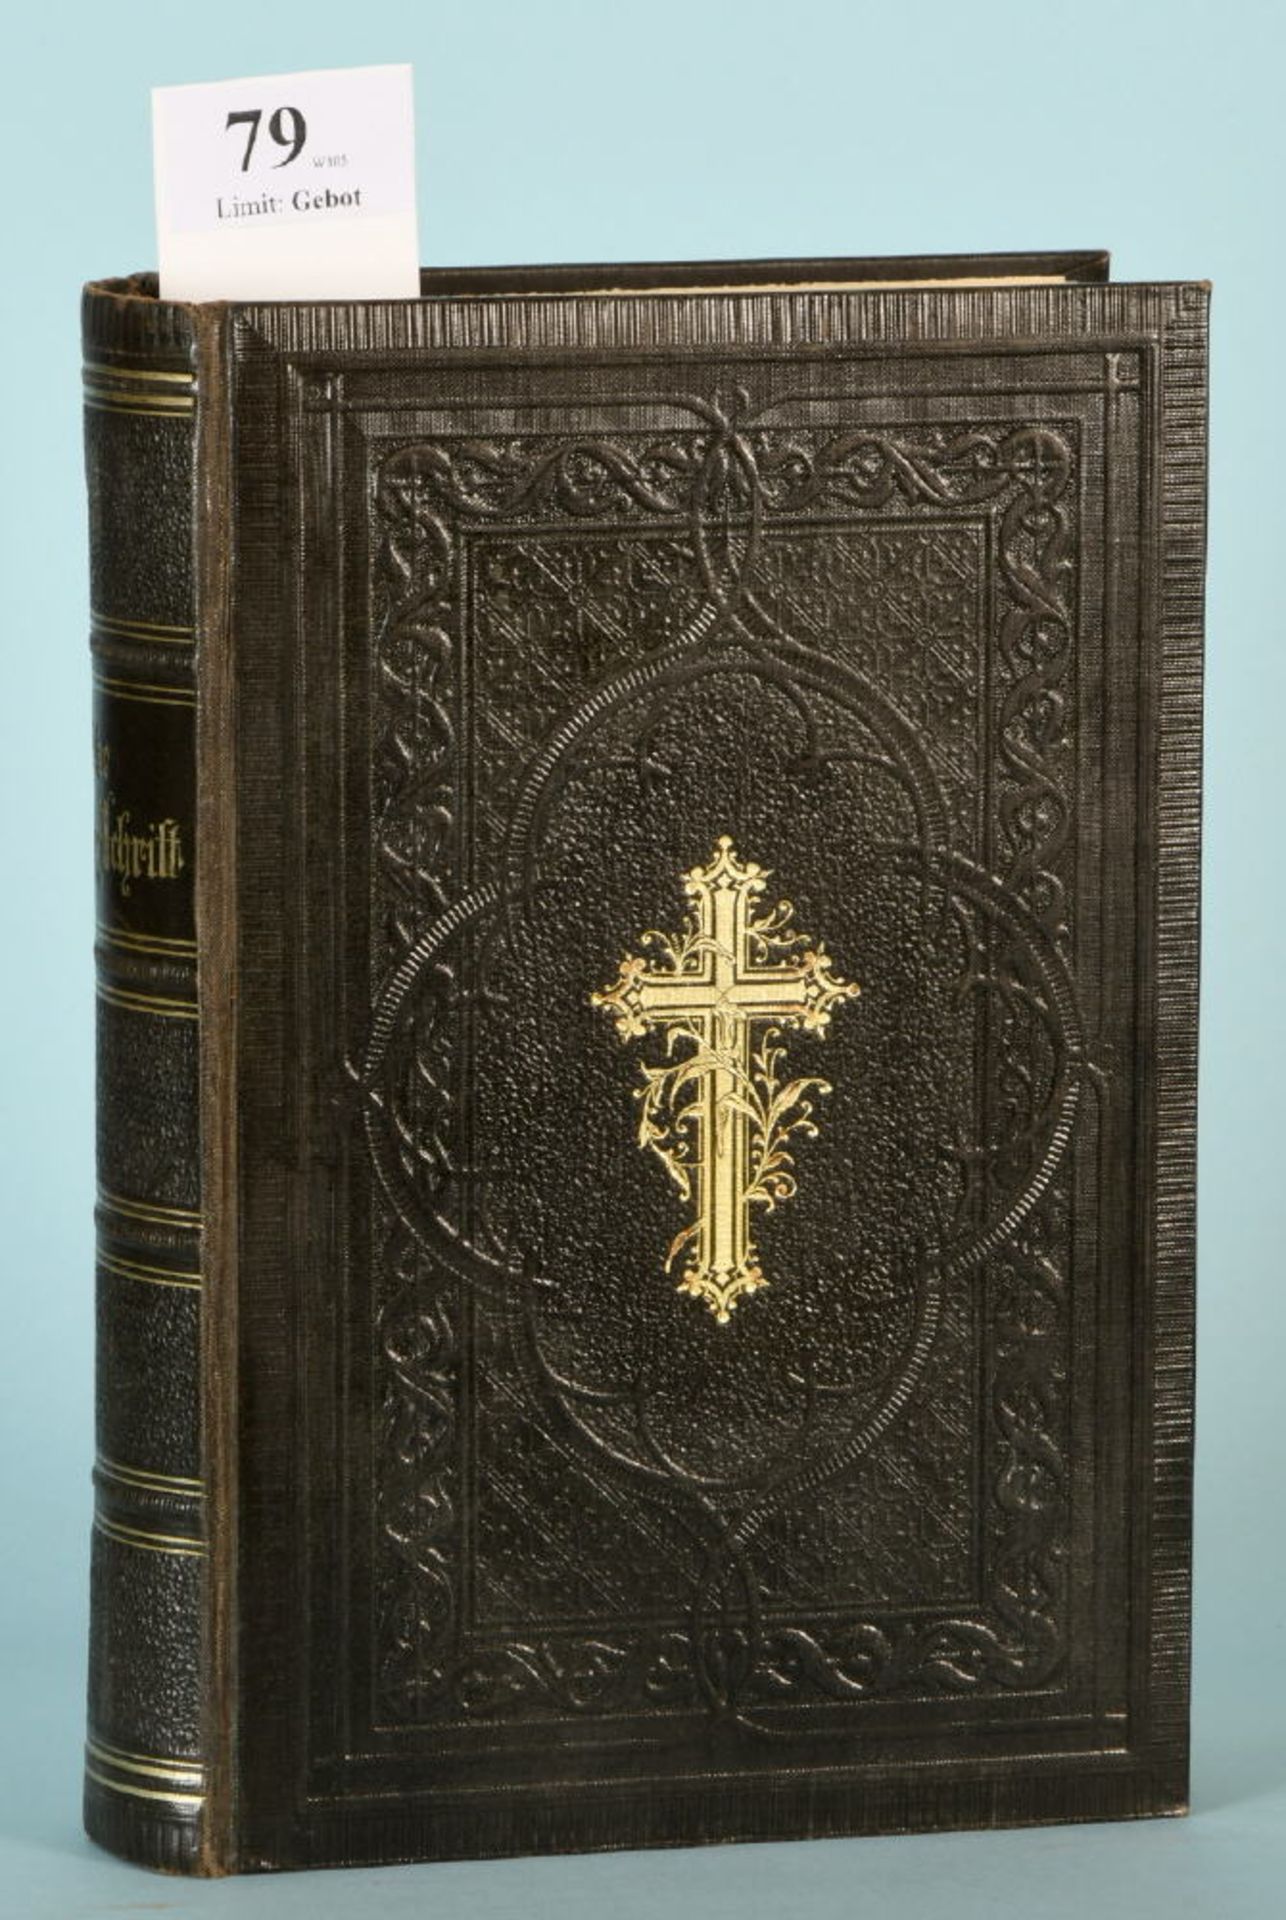 Luther, Martin "Die Bibel oder die ganze Hl. Schrift des AT und NT"